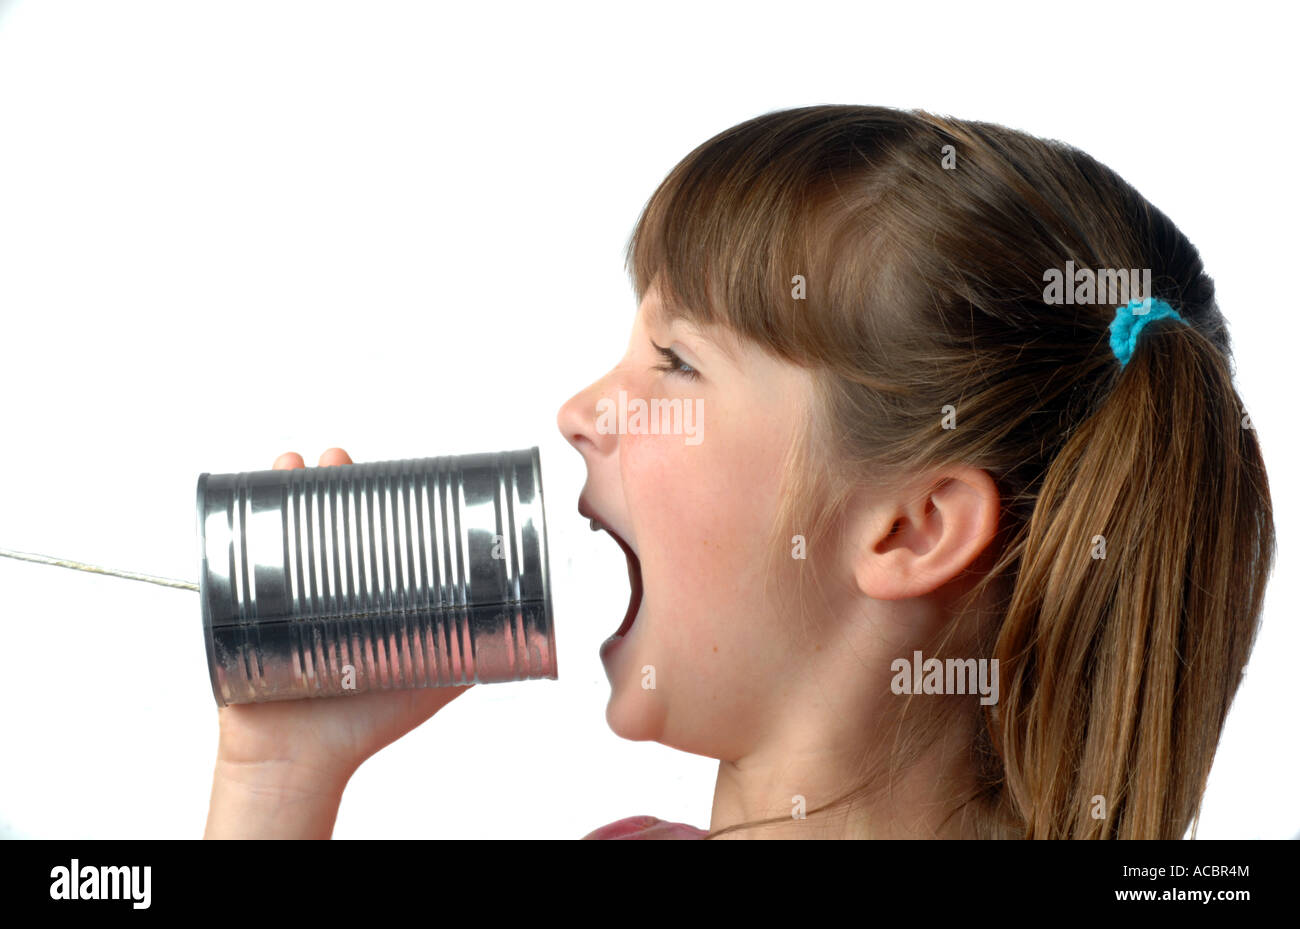 La ragazza grida in un barattolo di latta telefono Foto Stock